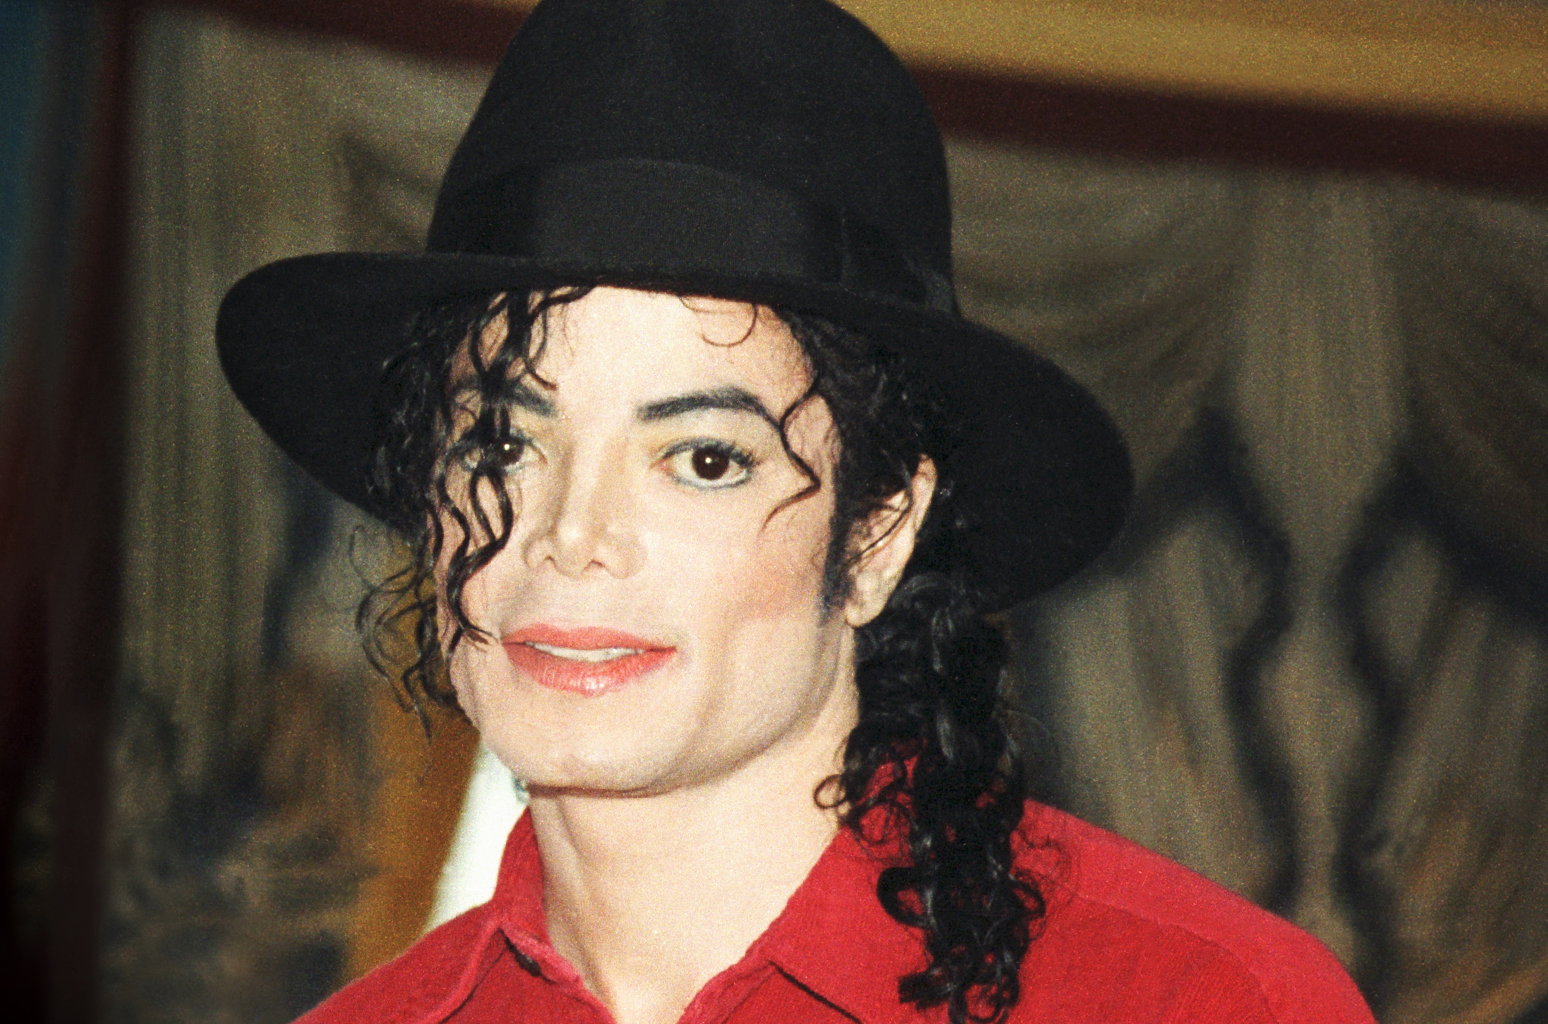 Fiul cel mic al lui Michael Jackson i-a fost alături fratelui său la absolvirea facultății. Imagini rare cu cei doi!